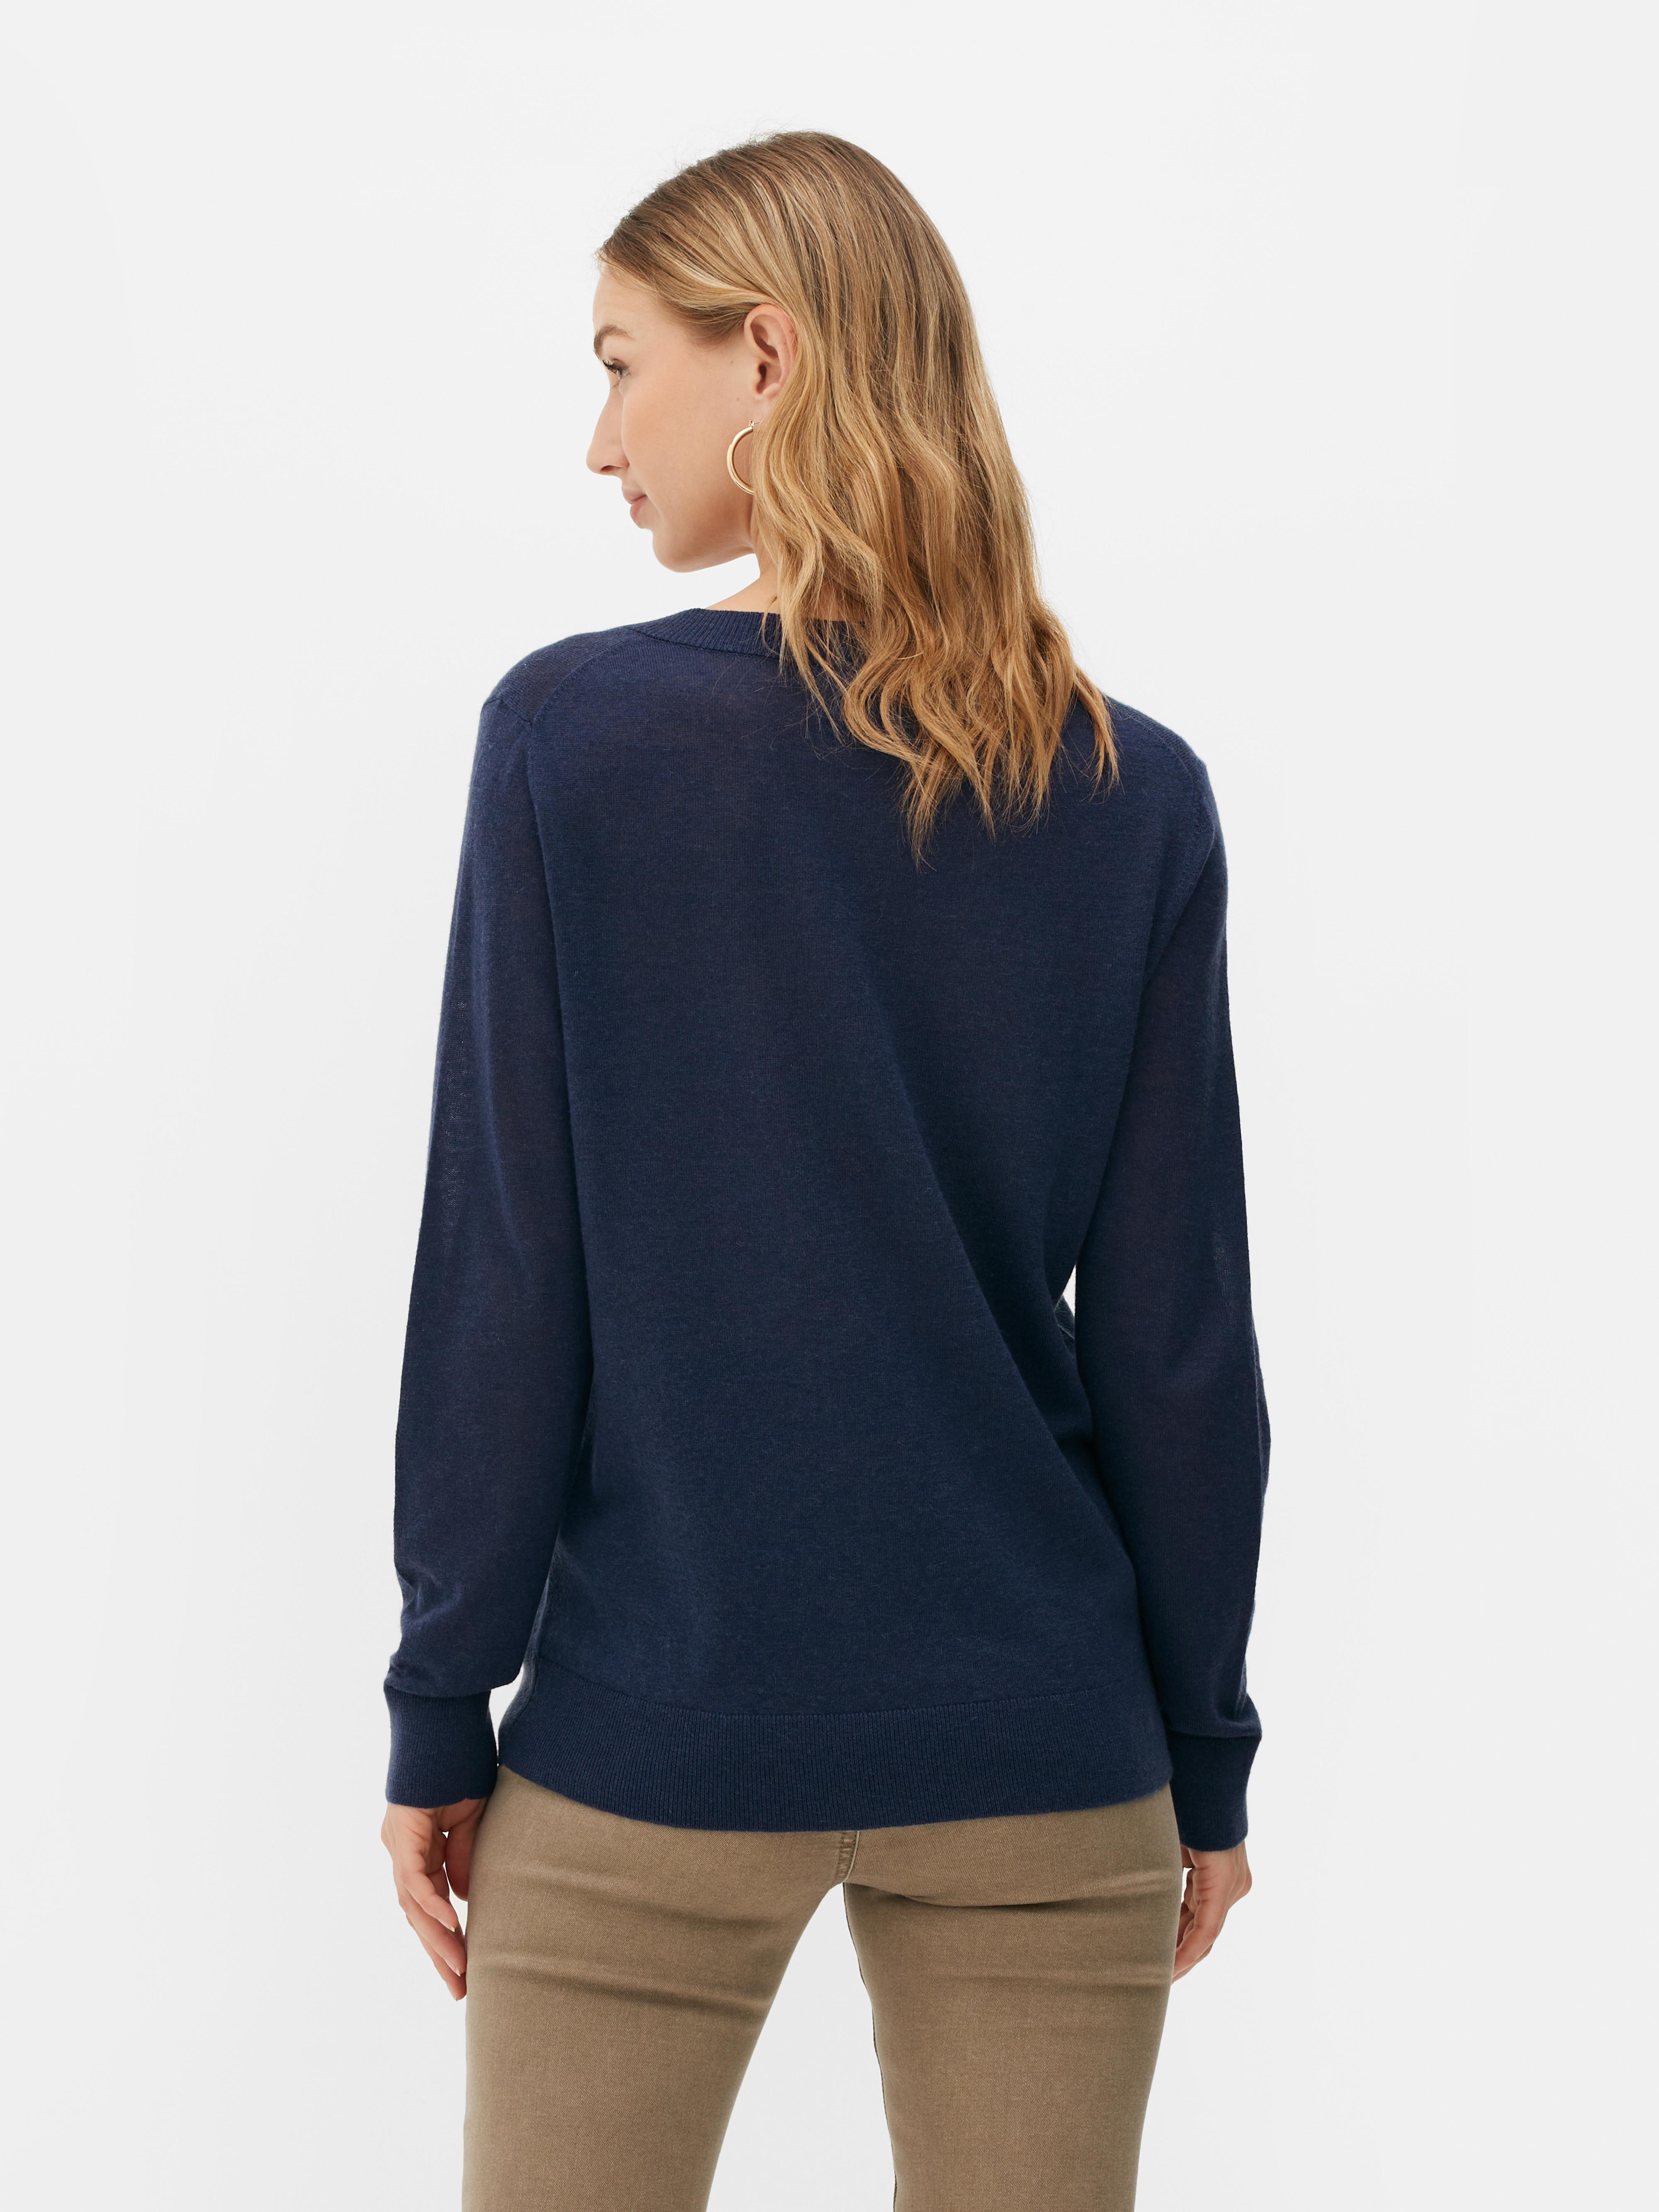 Women's Sweaters & Cardigans | Women's Long & Knitted Sweaters